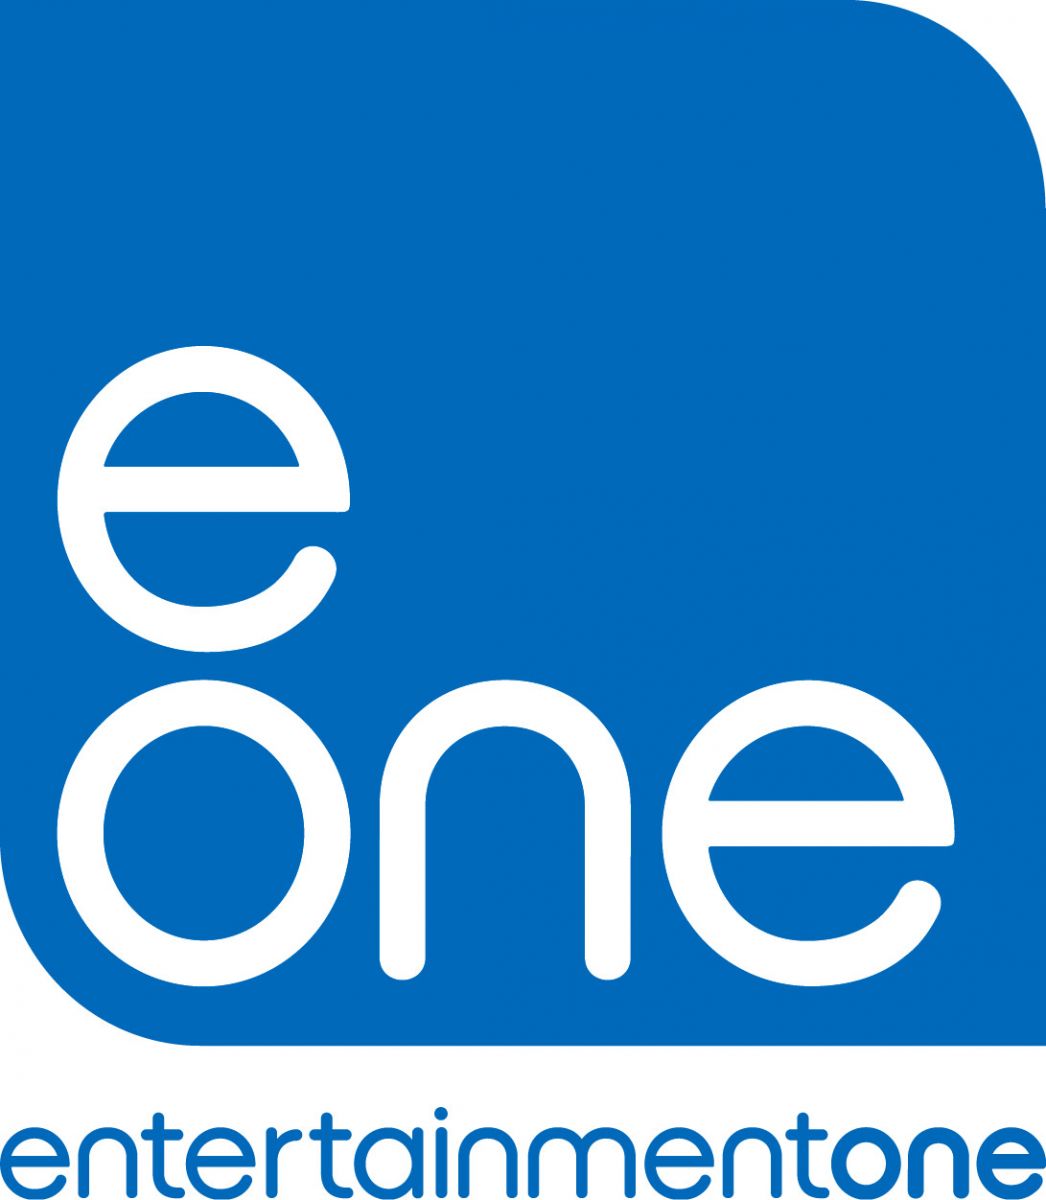 eone-logo__130418140001.jpg